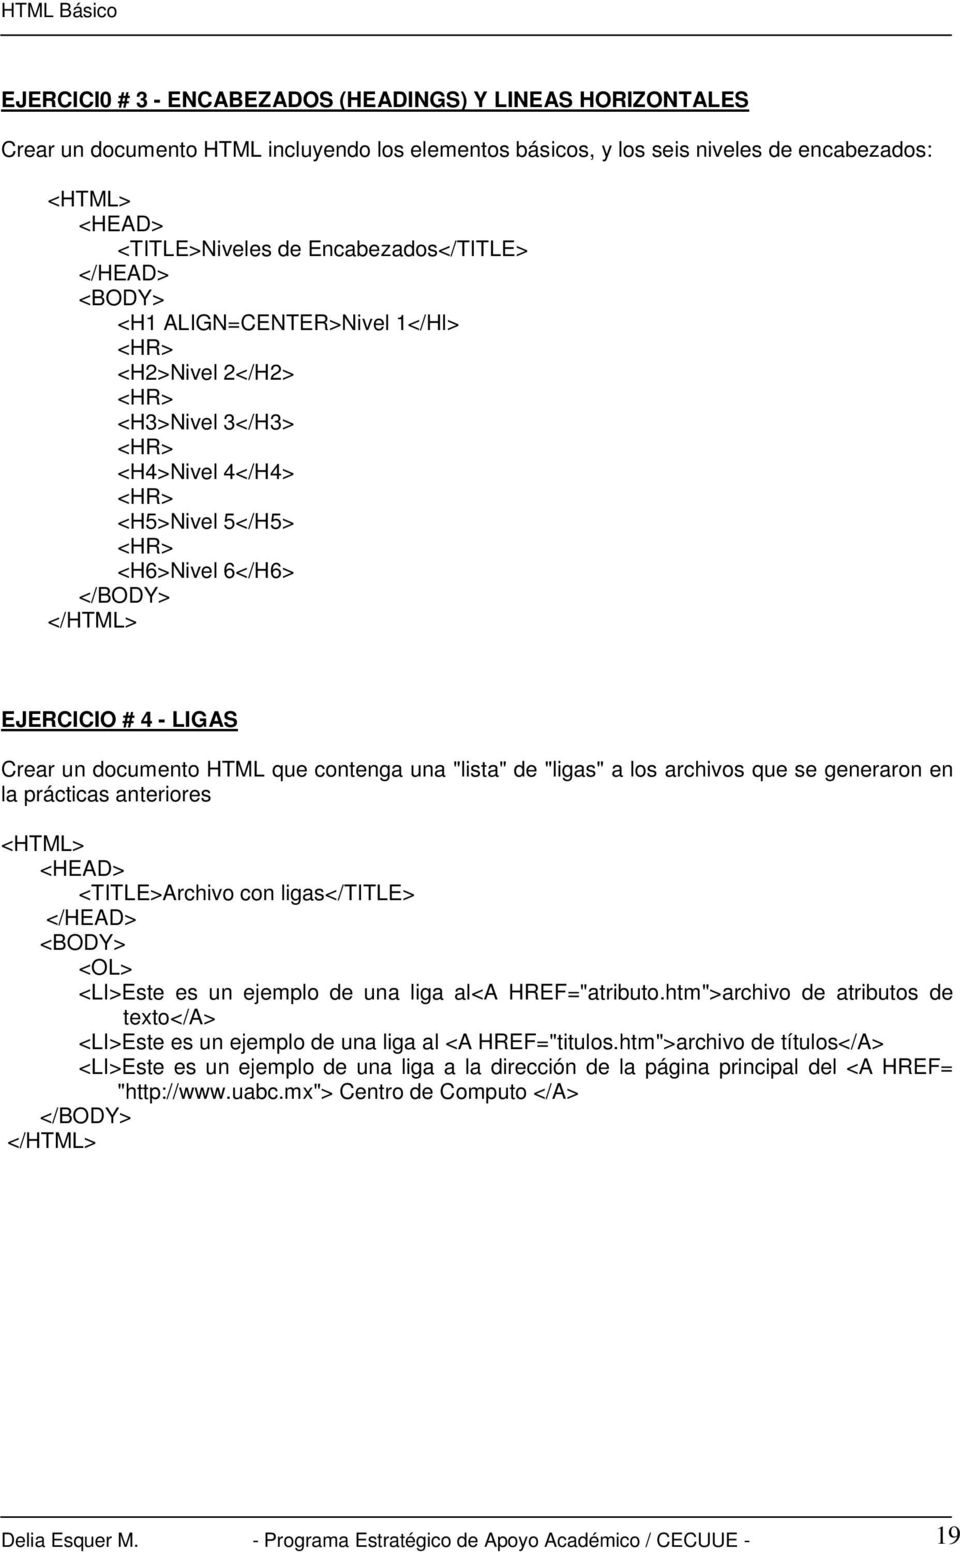 EJERCICIO # 4 - LIGAS Crear un documento HTML que contenga una "lista" de "ligas" a los archivos que se generaron en la prácticas anteriores <HTML> <HEAD> <TITLE>Archivo con ligas</title> </HEAD>